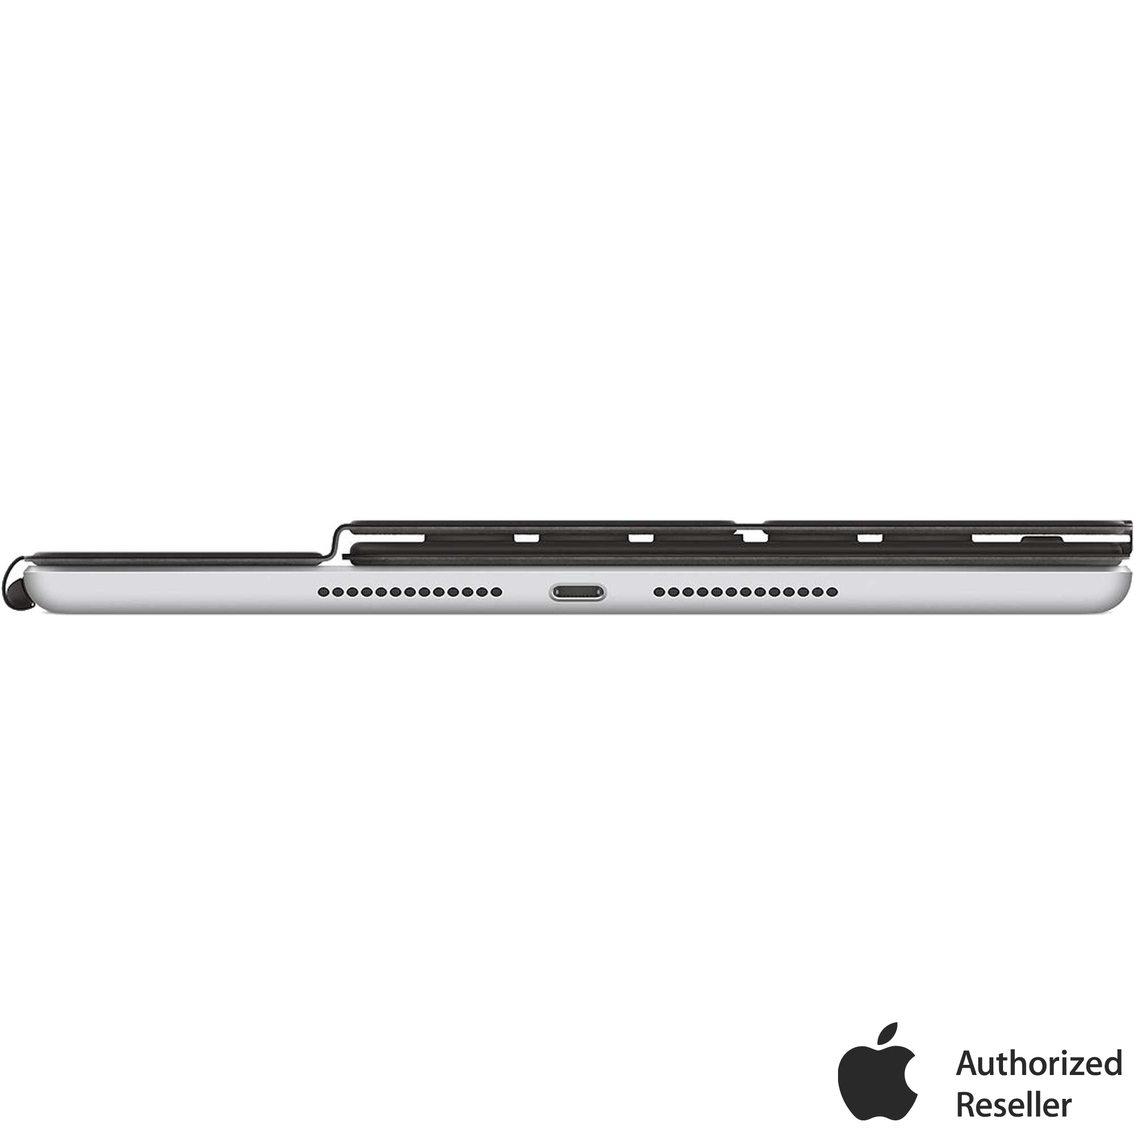 Apple iPad Smart Keyboard for iPad (7th Gen) and iPad Air (3rd Gen) - Image 4 of 4